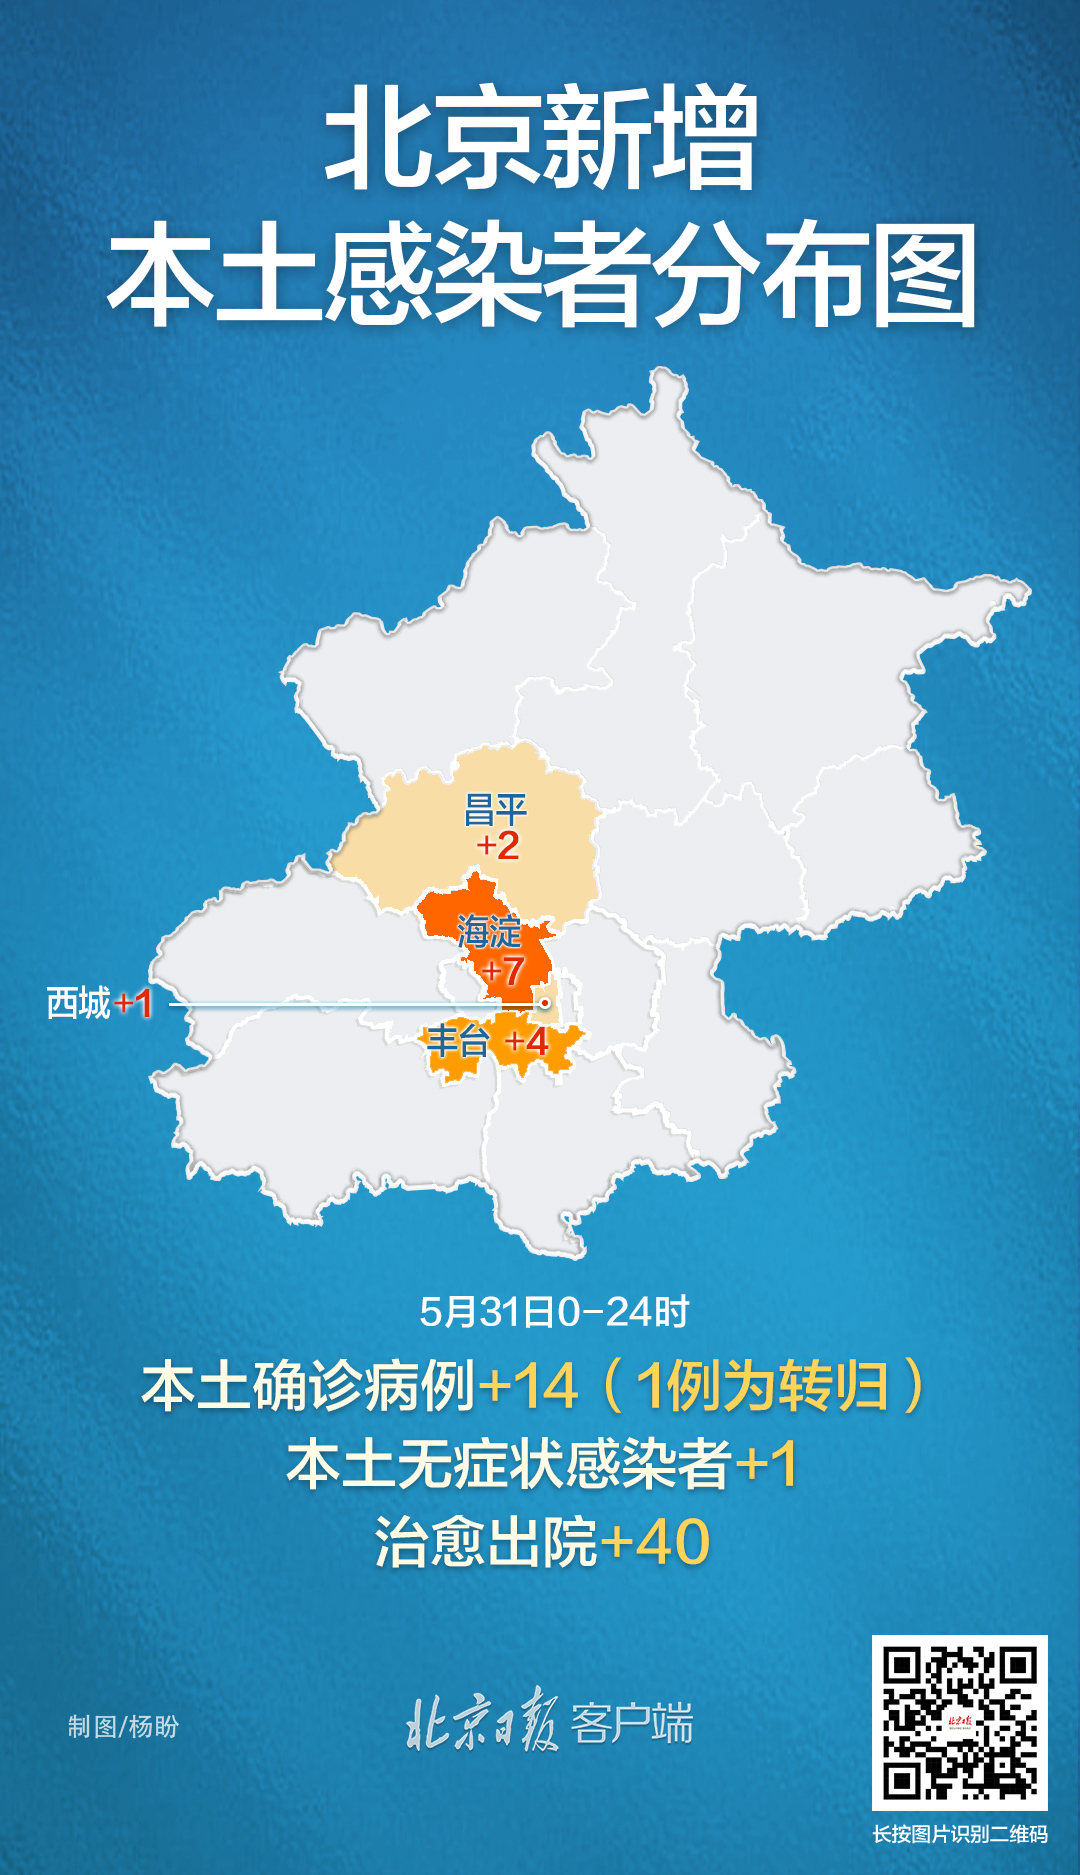 北京昨日新增本土141病例情况公布